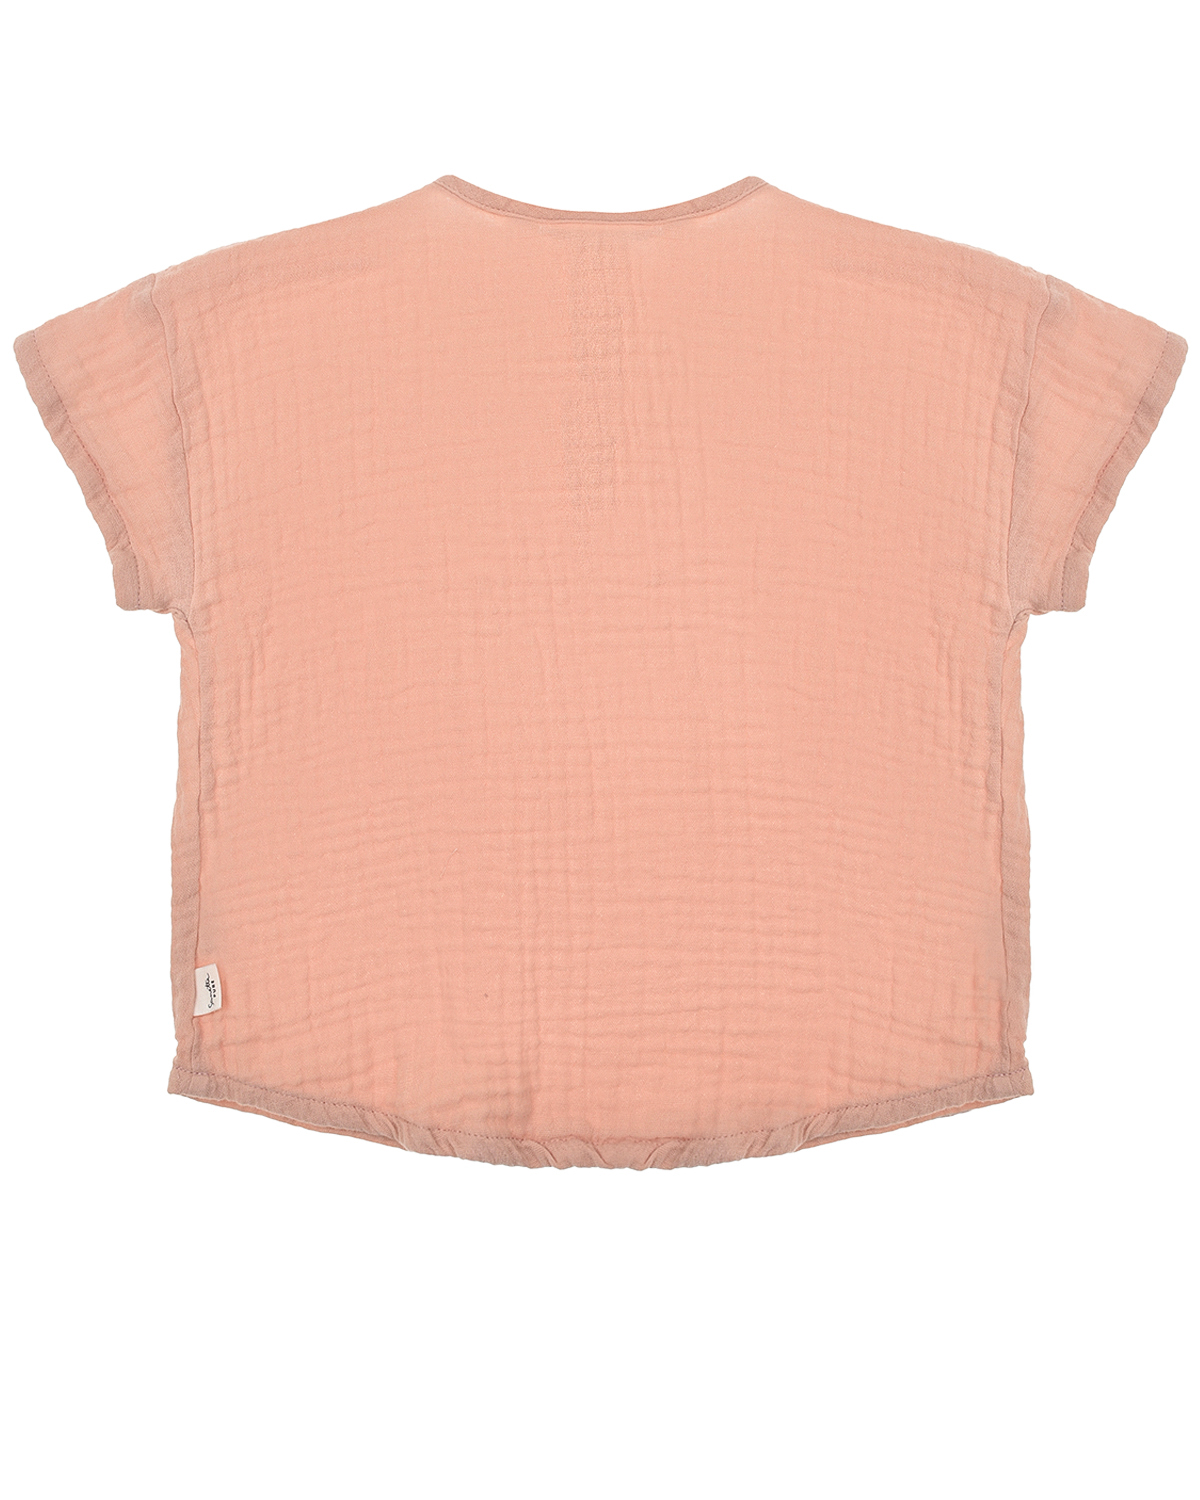 Пудровая футболка из хлопка Sanetta Pure детская, размер 74, цвет розовый - фото 2